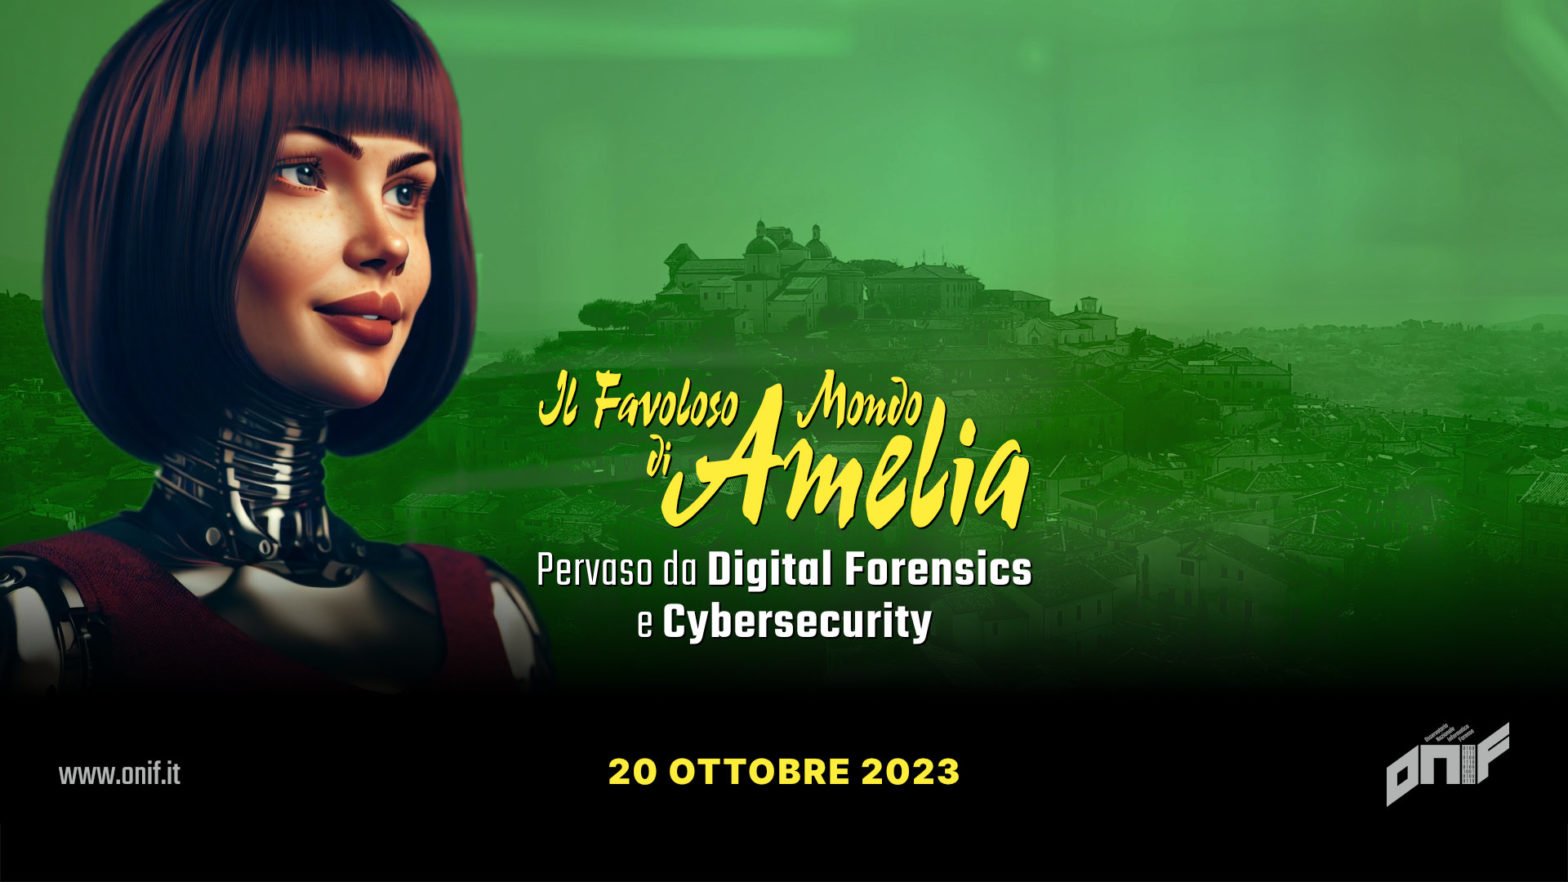 Locandina con la città di Amelia sullo sfondo e una donna robot dai capelli a caschetto. In centro la scritta: Il favoloso mondo di Amelia pervaso da Digital Forensics e Cybersecurity. 20 ottobre 2023.